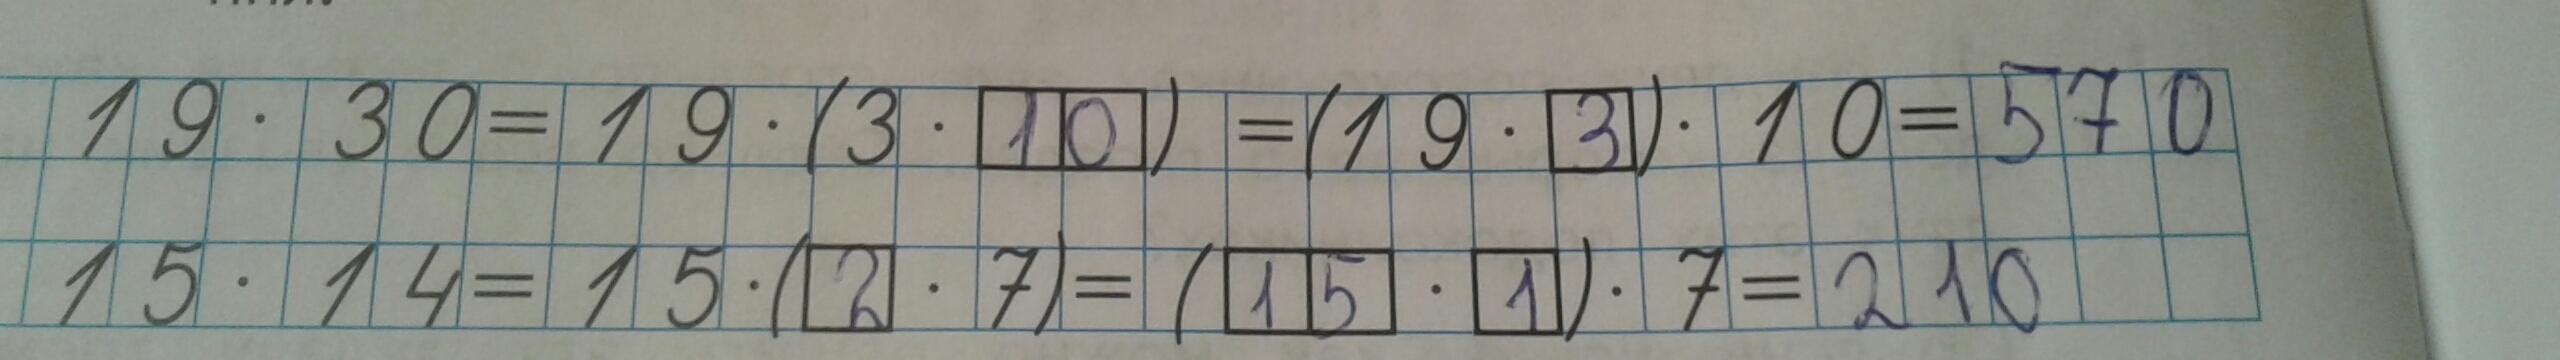 (148-24) :4+14•1006 Вычислите. Вычислите 27/40 18. Вычислите: 27 9 :18 . 40 16. Вычислите (148-24):4+14*1006 5 класс. 27 40 18